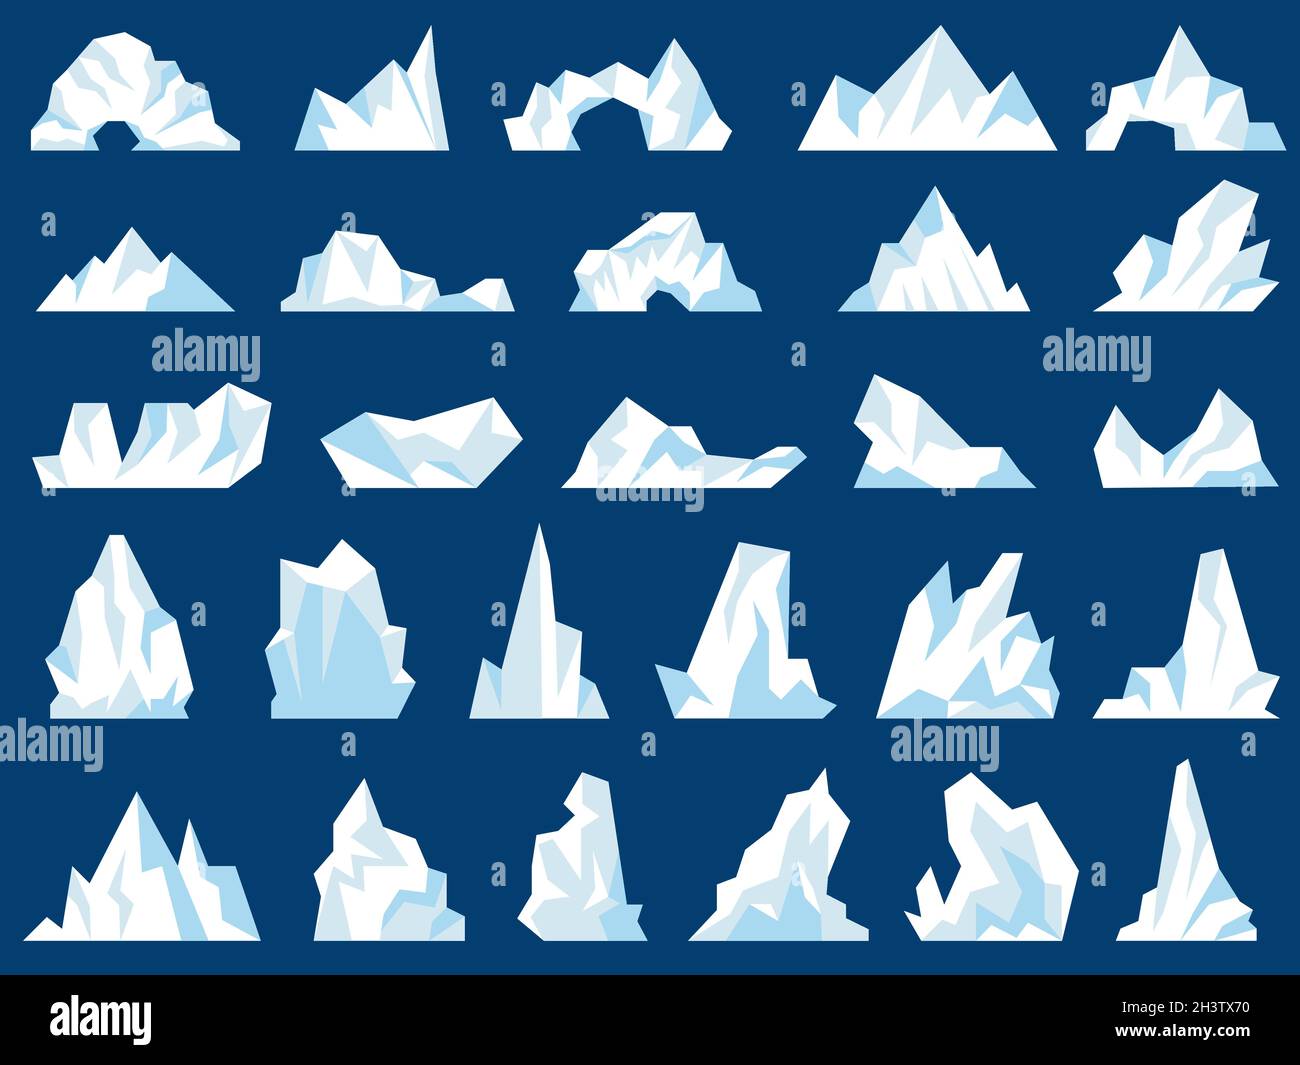 Illustrazioni di iceberg. Cristallo gelido montagne neve colline nell'oceano polo nord antartico gelo recenti immagini vettoriali Illustrazione Vettoriale